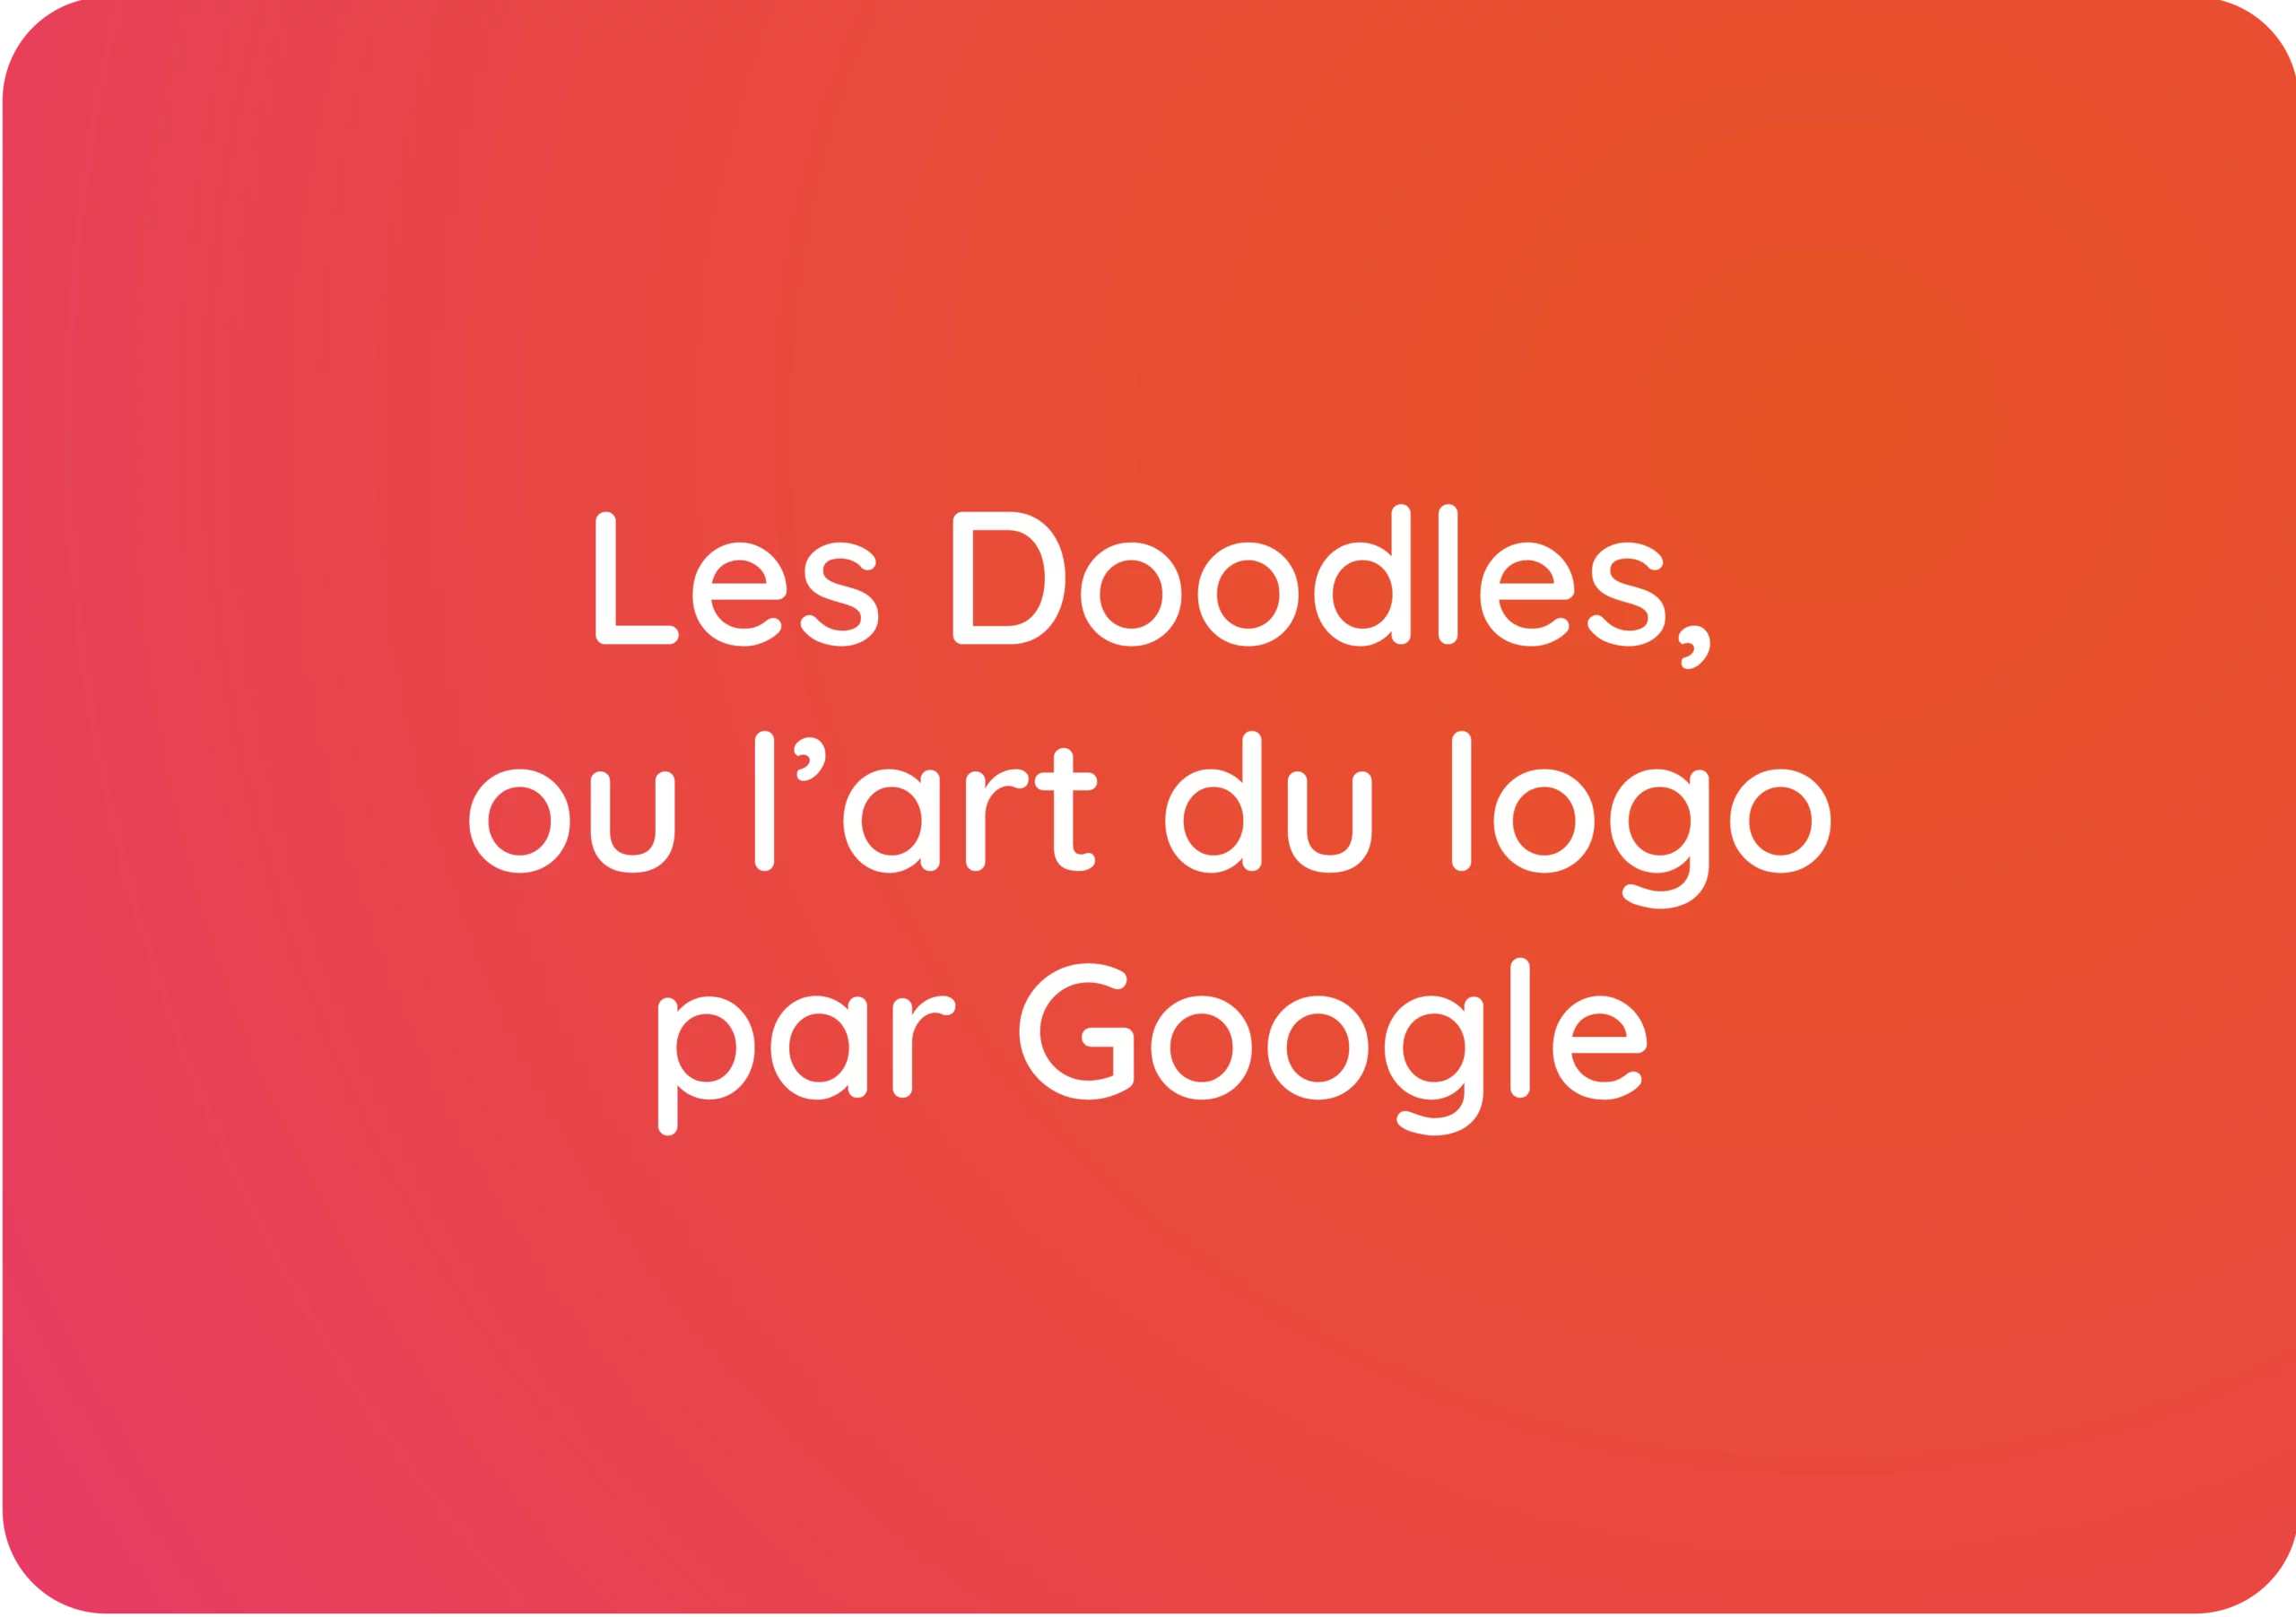 Les Doodles ou l’art du logo par Google